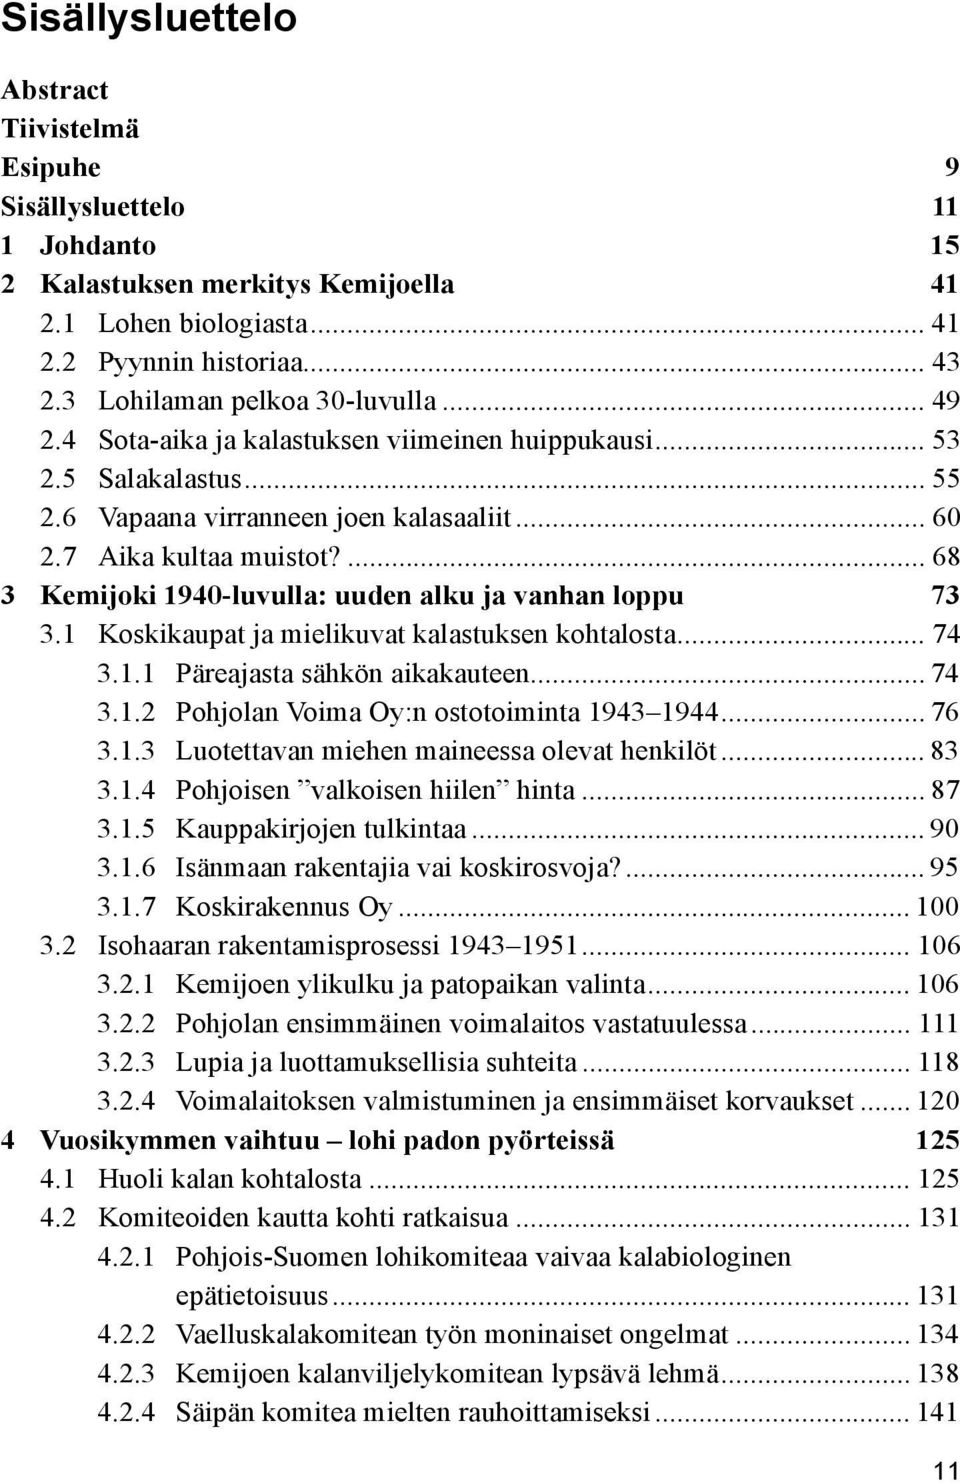 ... 68 3 Kemijoki 1940-luvulla: uuden alku ja vanhan loppu 73 3.1 Koskikaupat ja mielikuvat kalastuksen kohtalosta... 74 3.1.1 Päreajasta sähkön aikakauteen... 74 3.1.2 Pohjolan Voima Oy:n ostotoiminta 1943 1944.